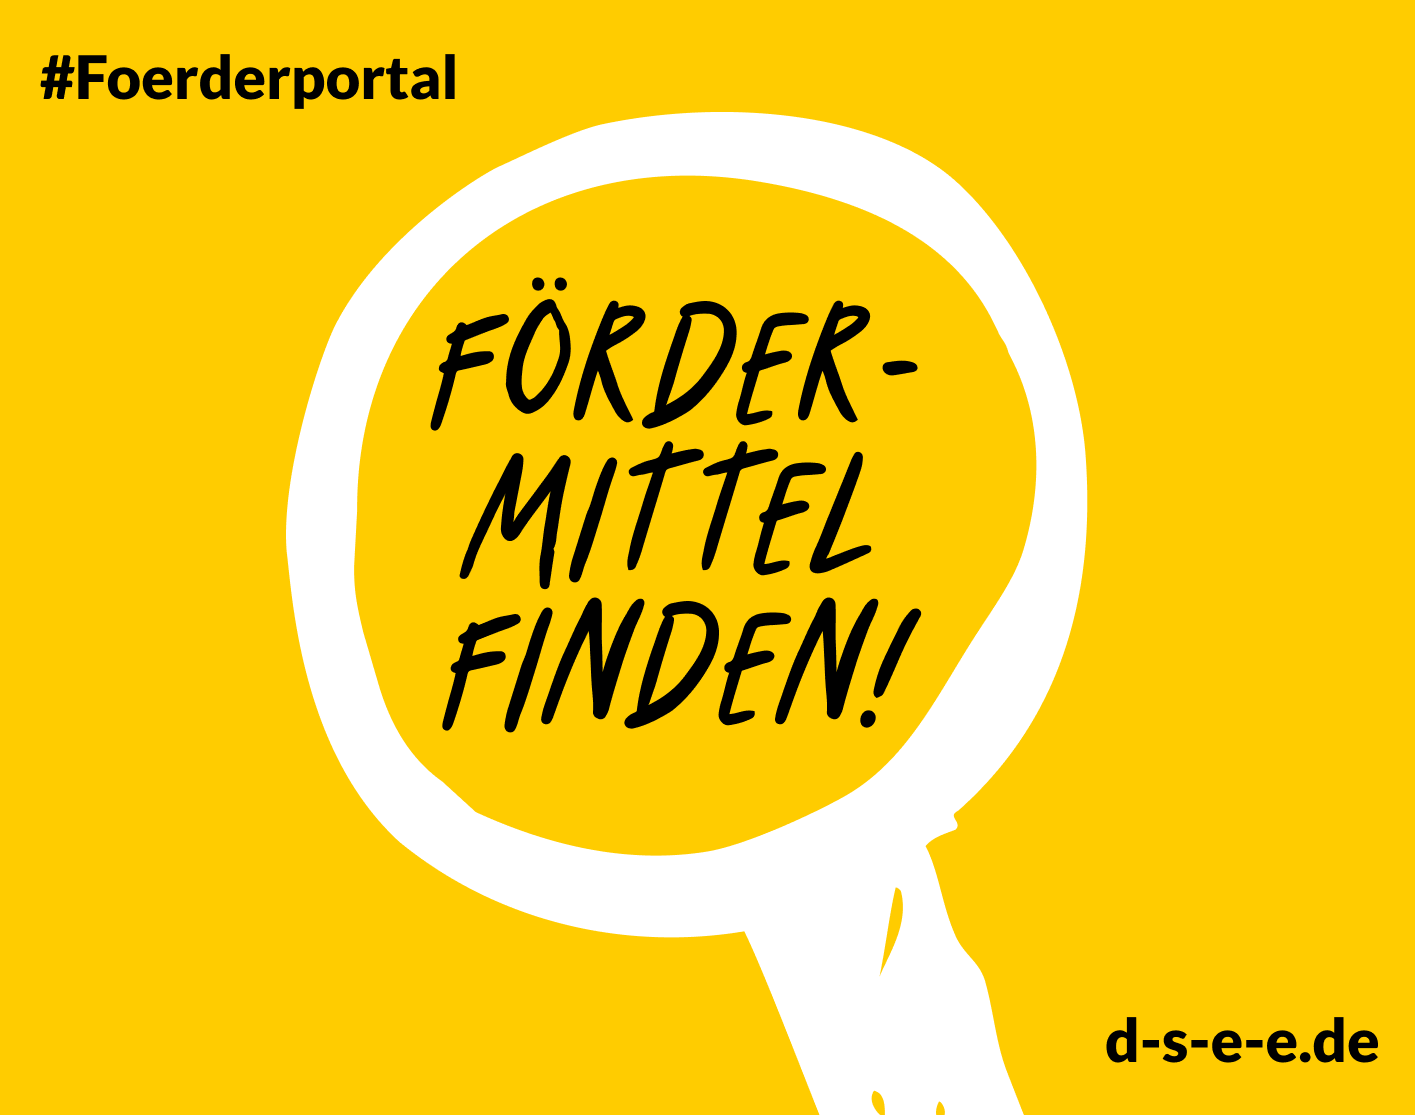 Grafik mit einer Lupe und dem Text: #Foerderportal. Fördermittel finden!. d-s-e-e.de